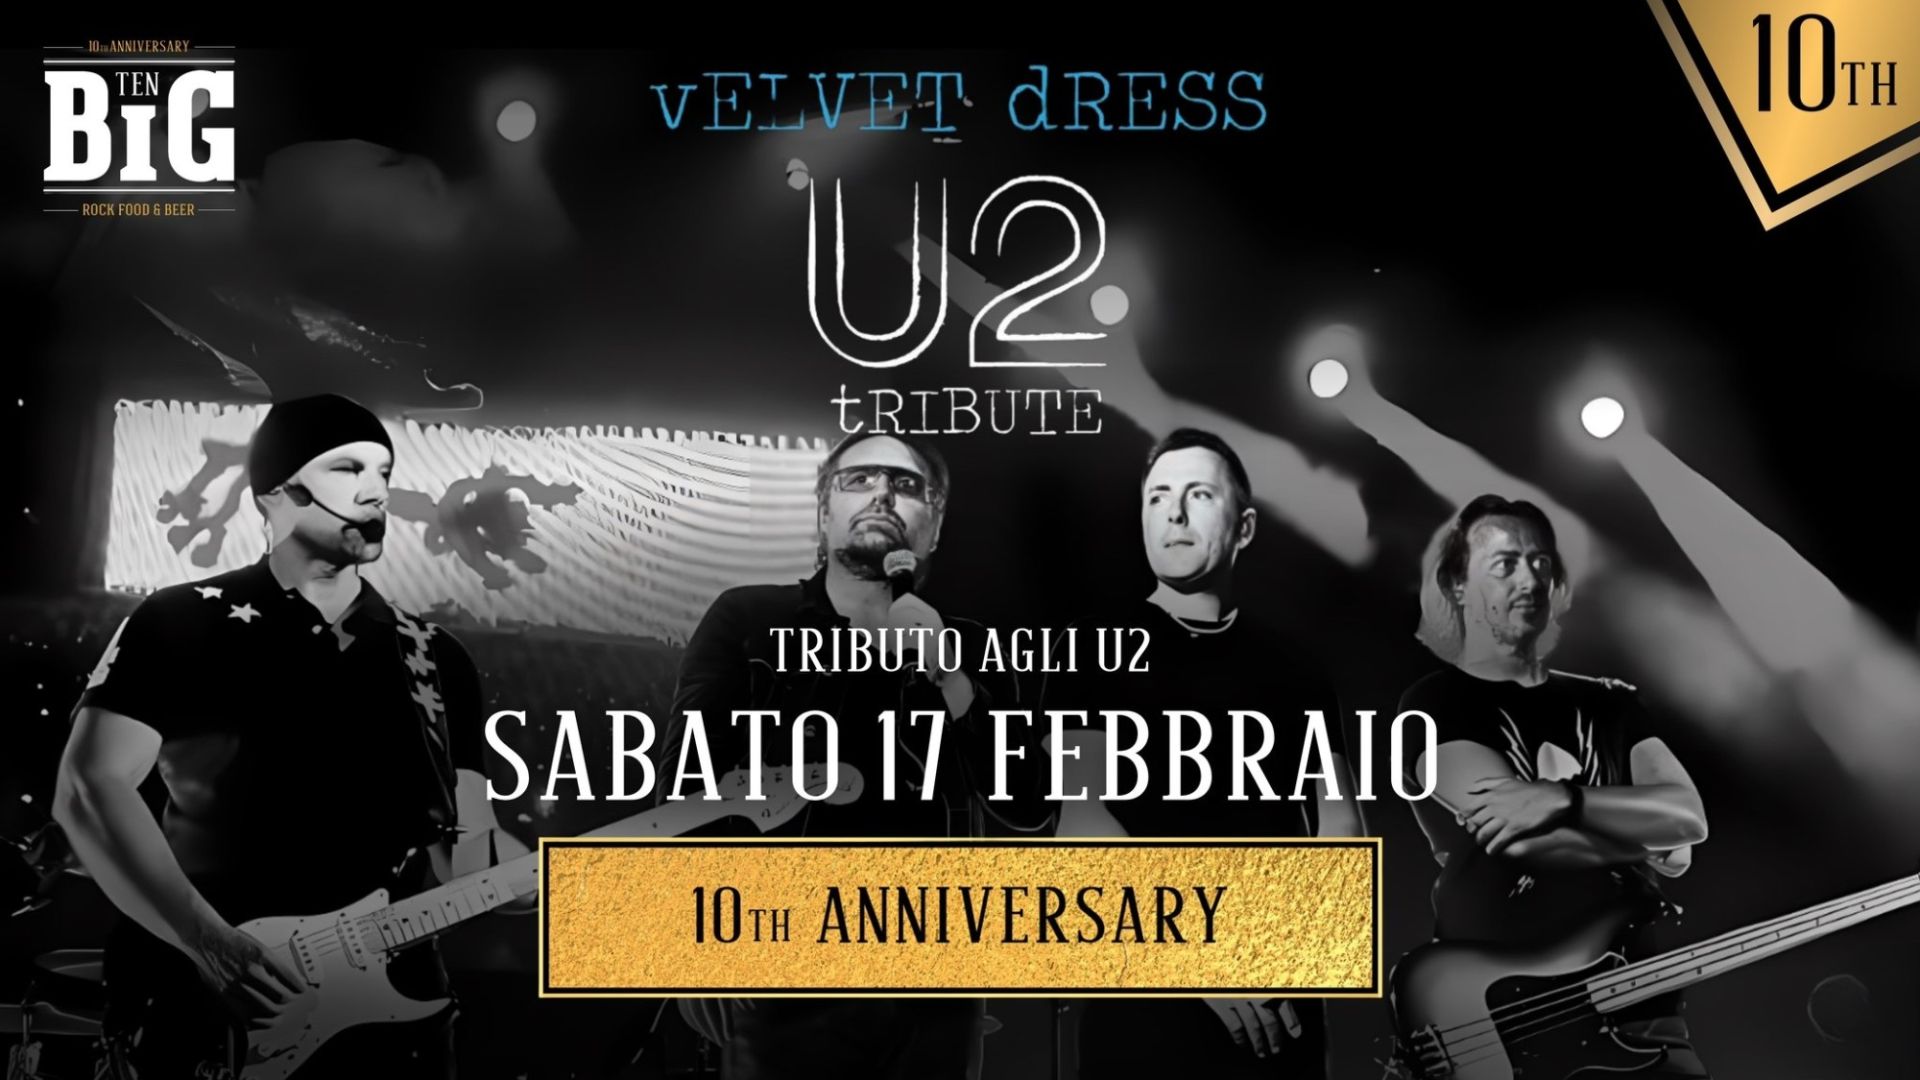 Velvet Dress U2 Tribute